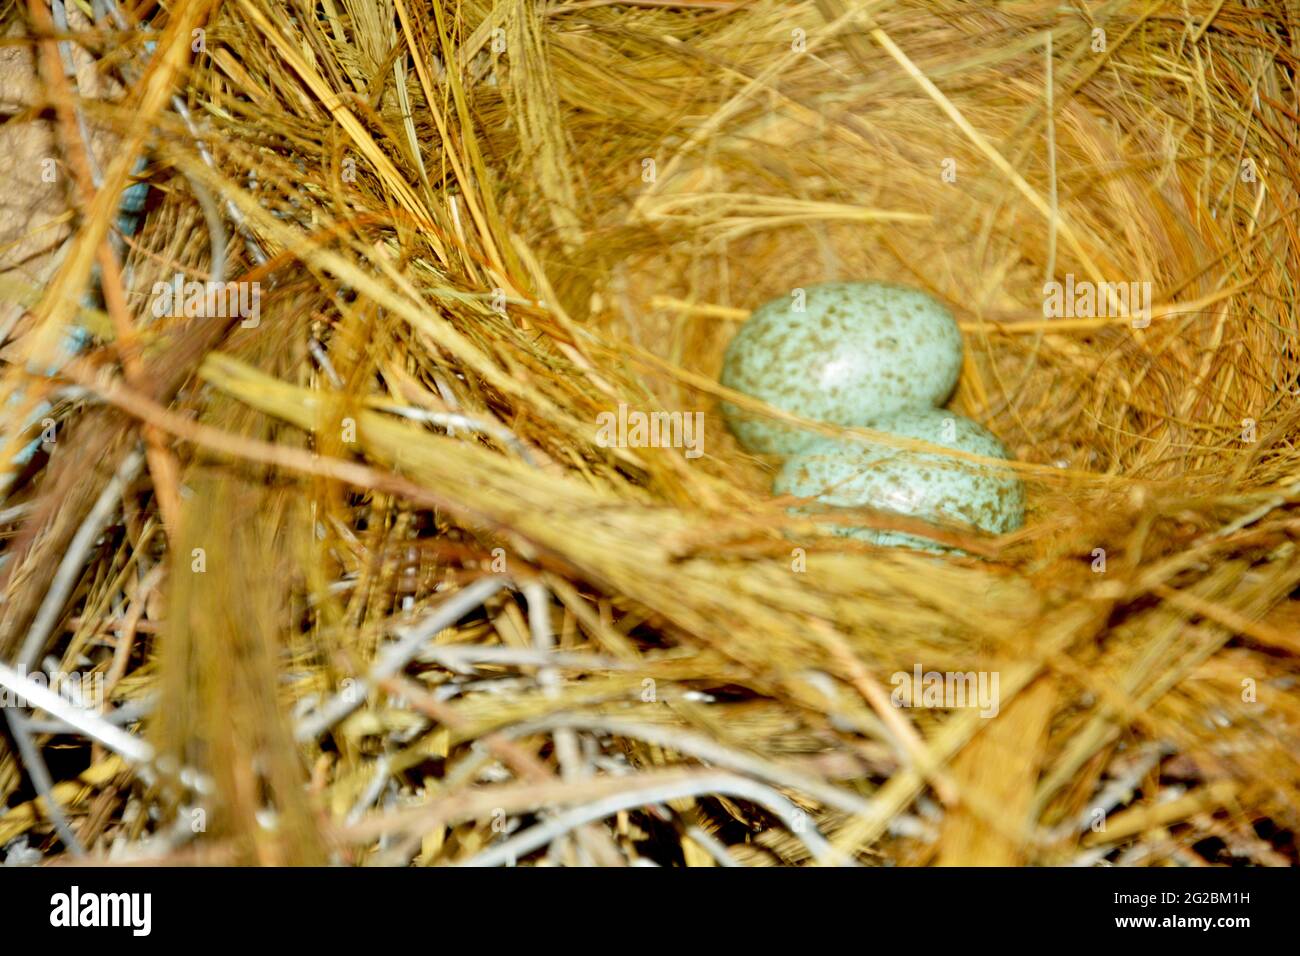 Nahaufnahme von zwei kleinen Kräheneiern in einem Vogelnest aus ReisHeu, Stroh, selektiver Fokussierung Stockfoto